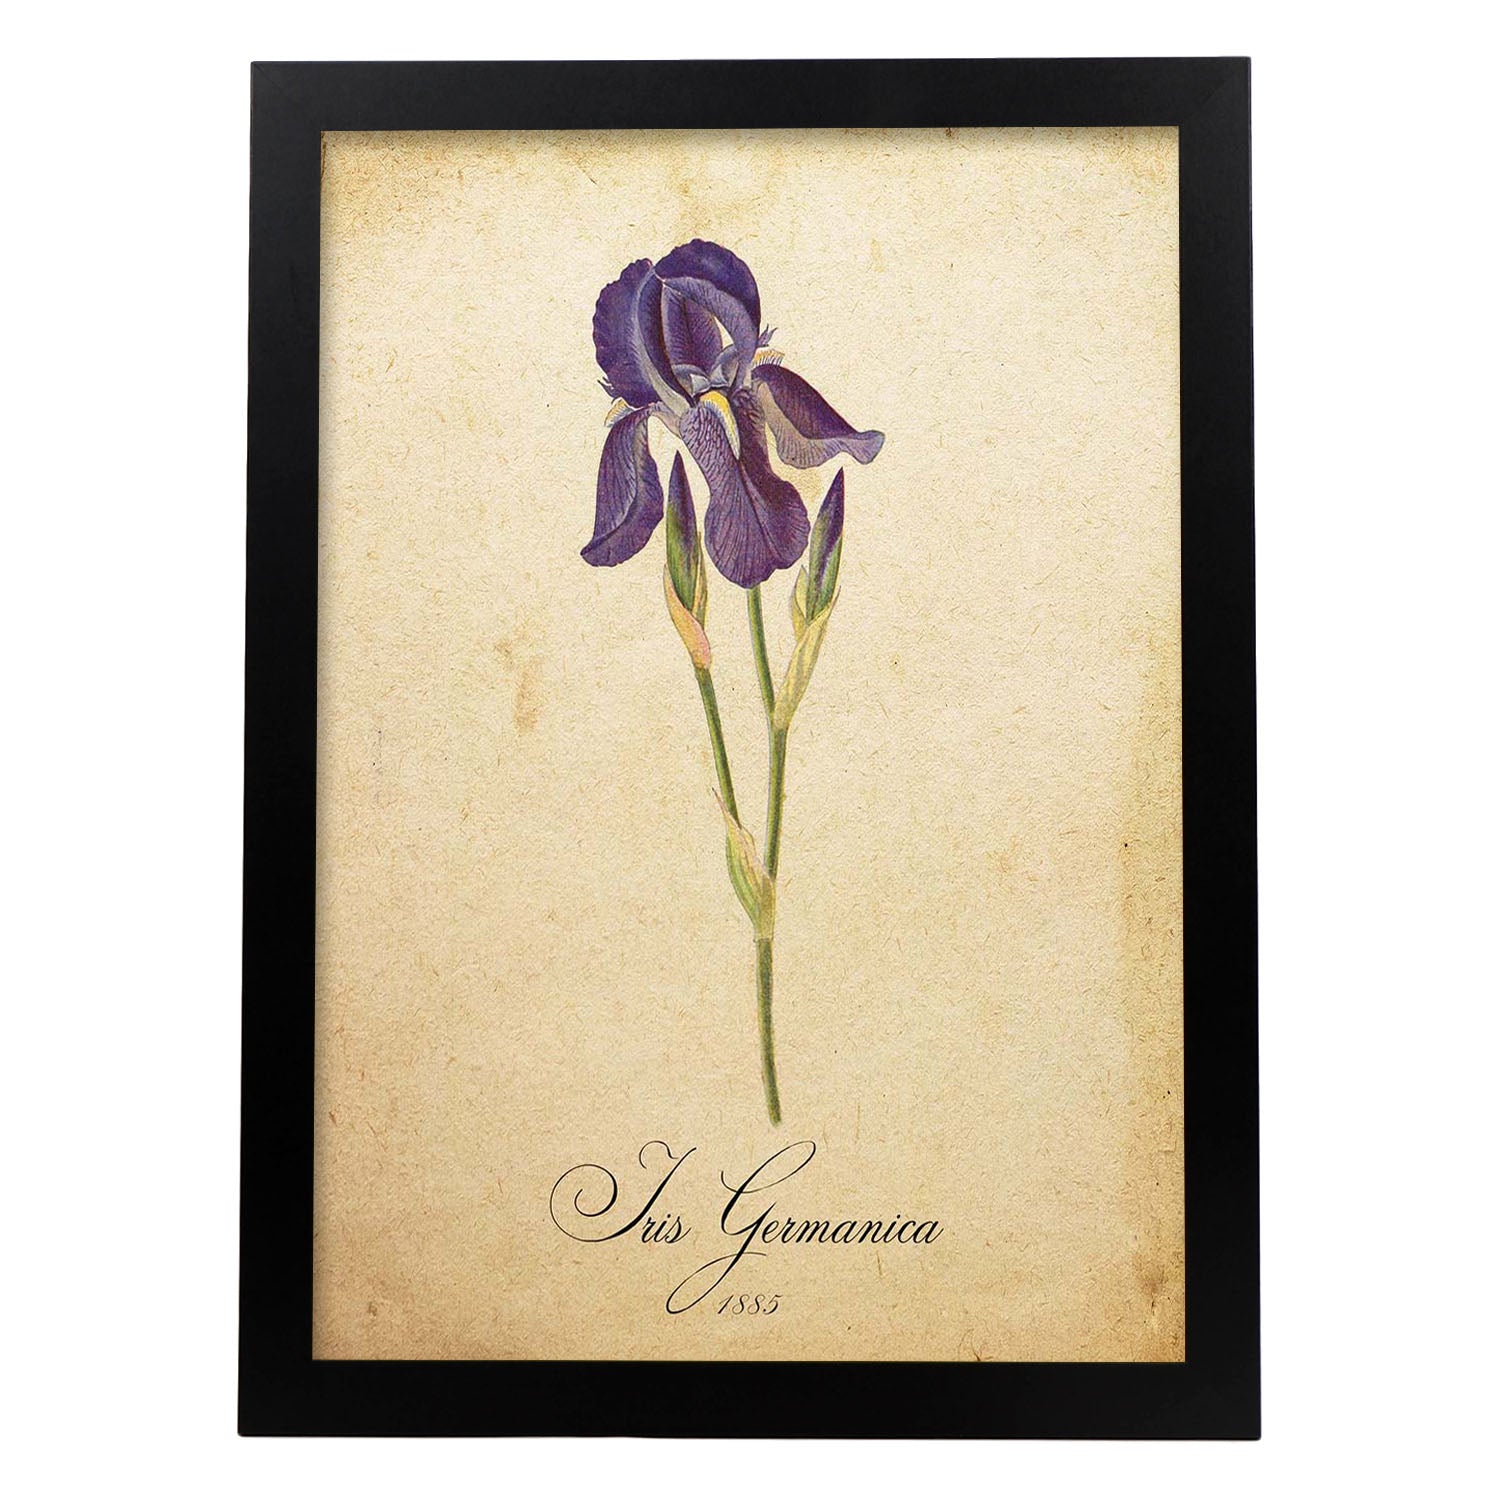 Poster de flores vintage. Lámina Iris germanica con diseño vintage.-Artwork-Nacnic-A3-Marco Negro-Nacnic Estudio SL